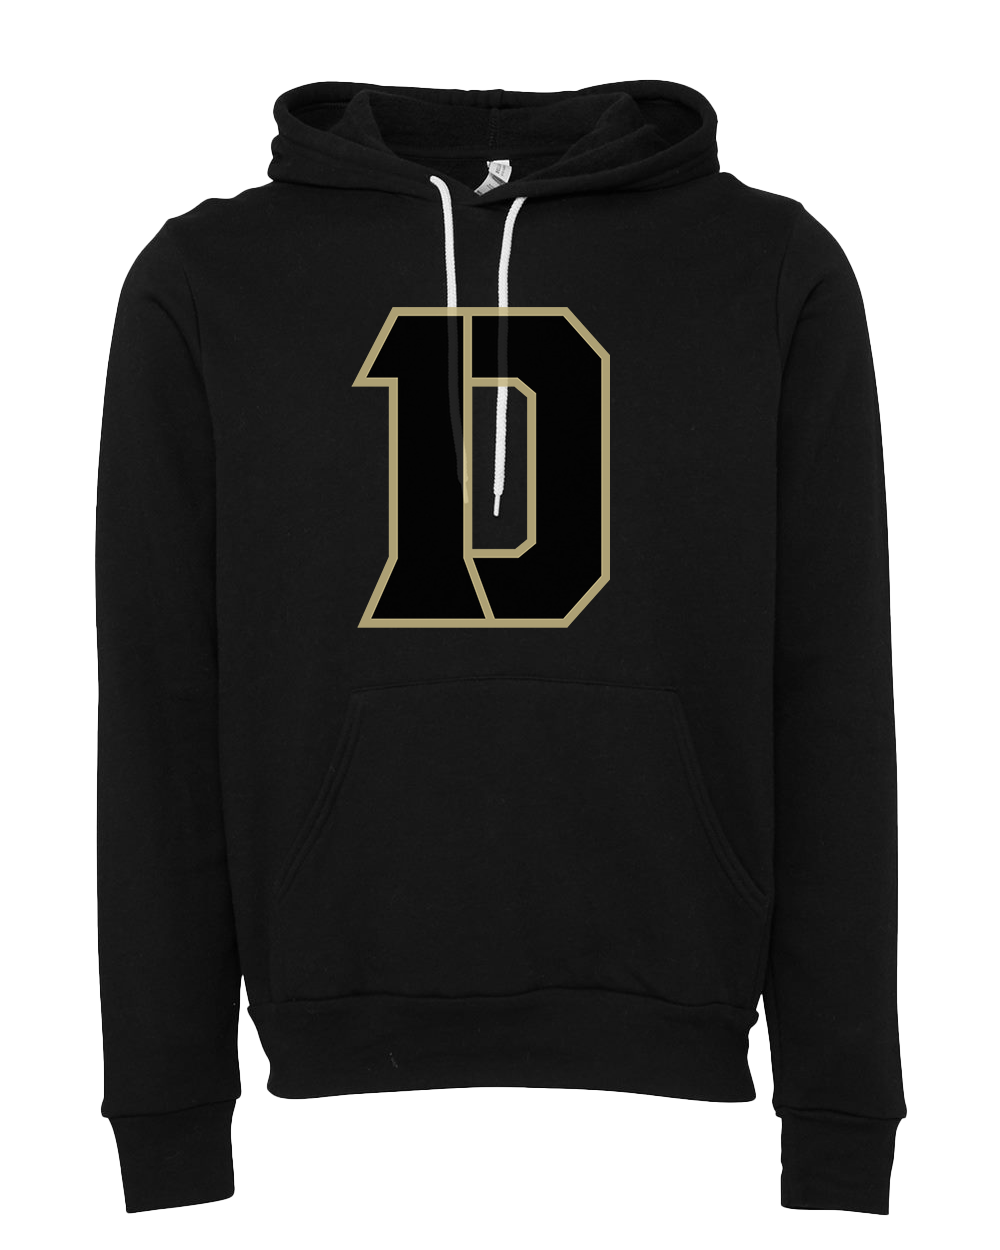 Daleville Broncos D logo Hooded Sweatshirt - Black